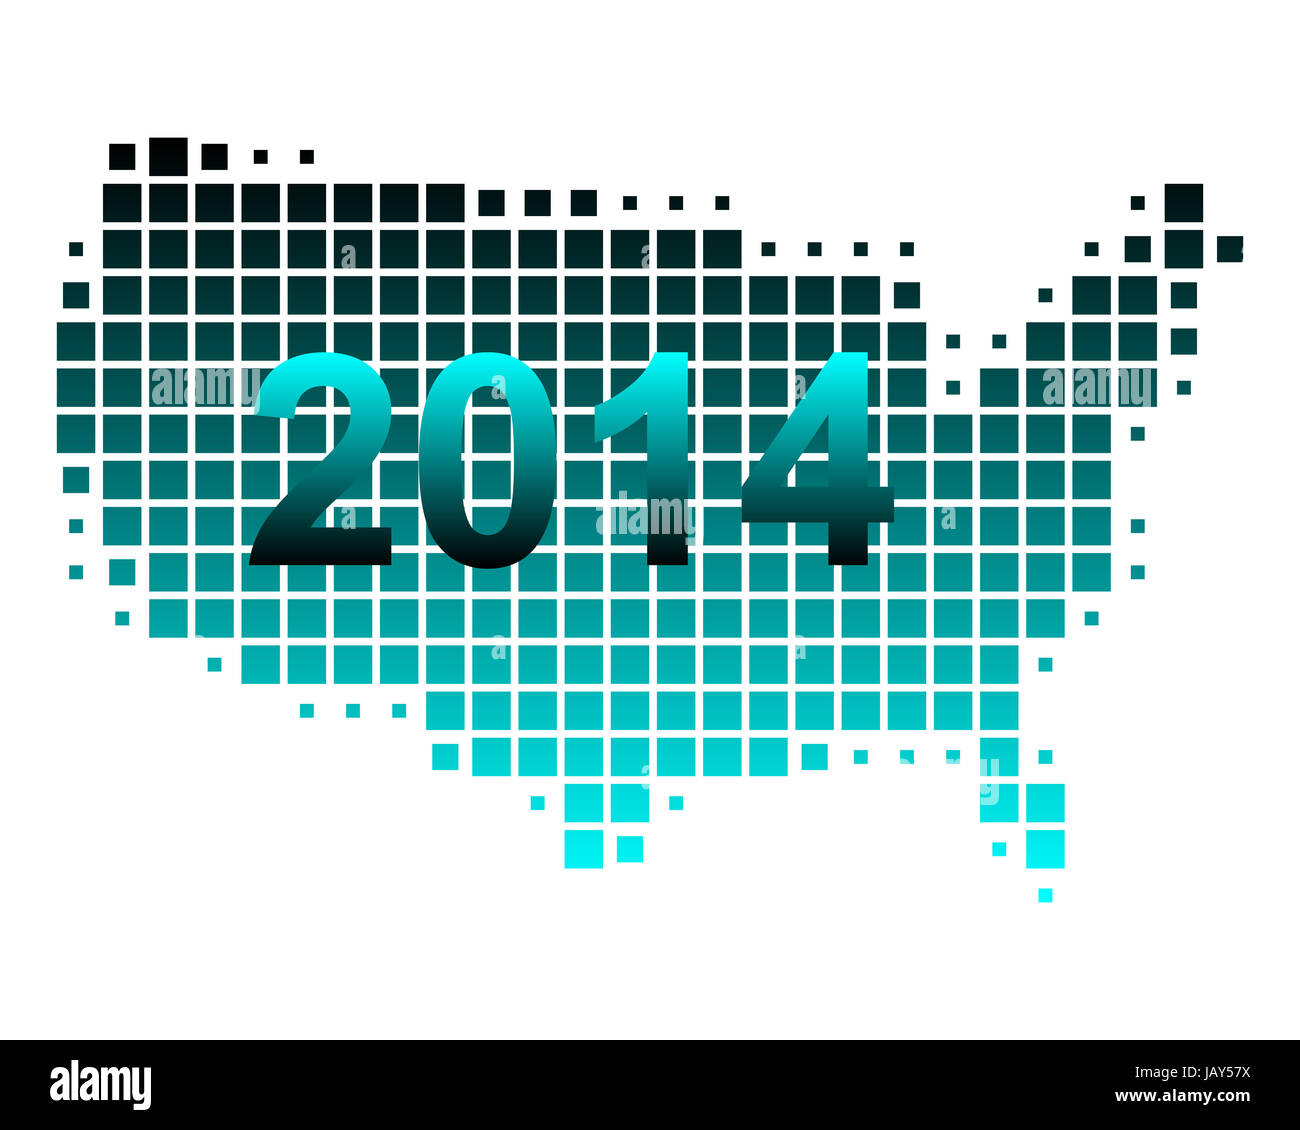 Karte der USA 2014 Banque D'Images